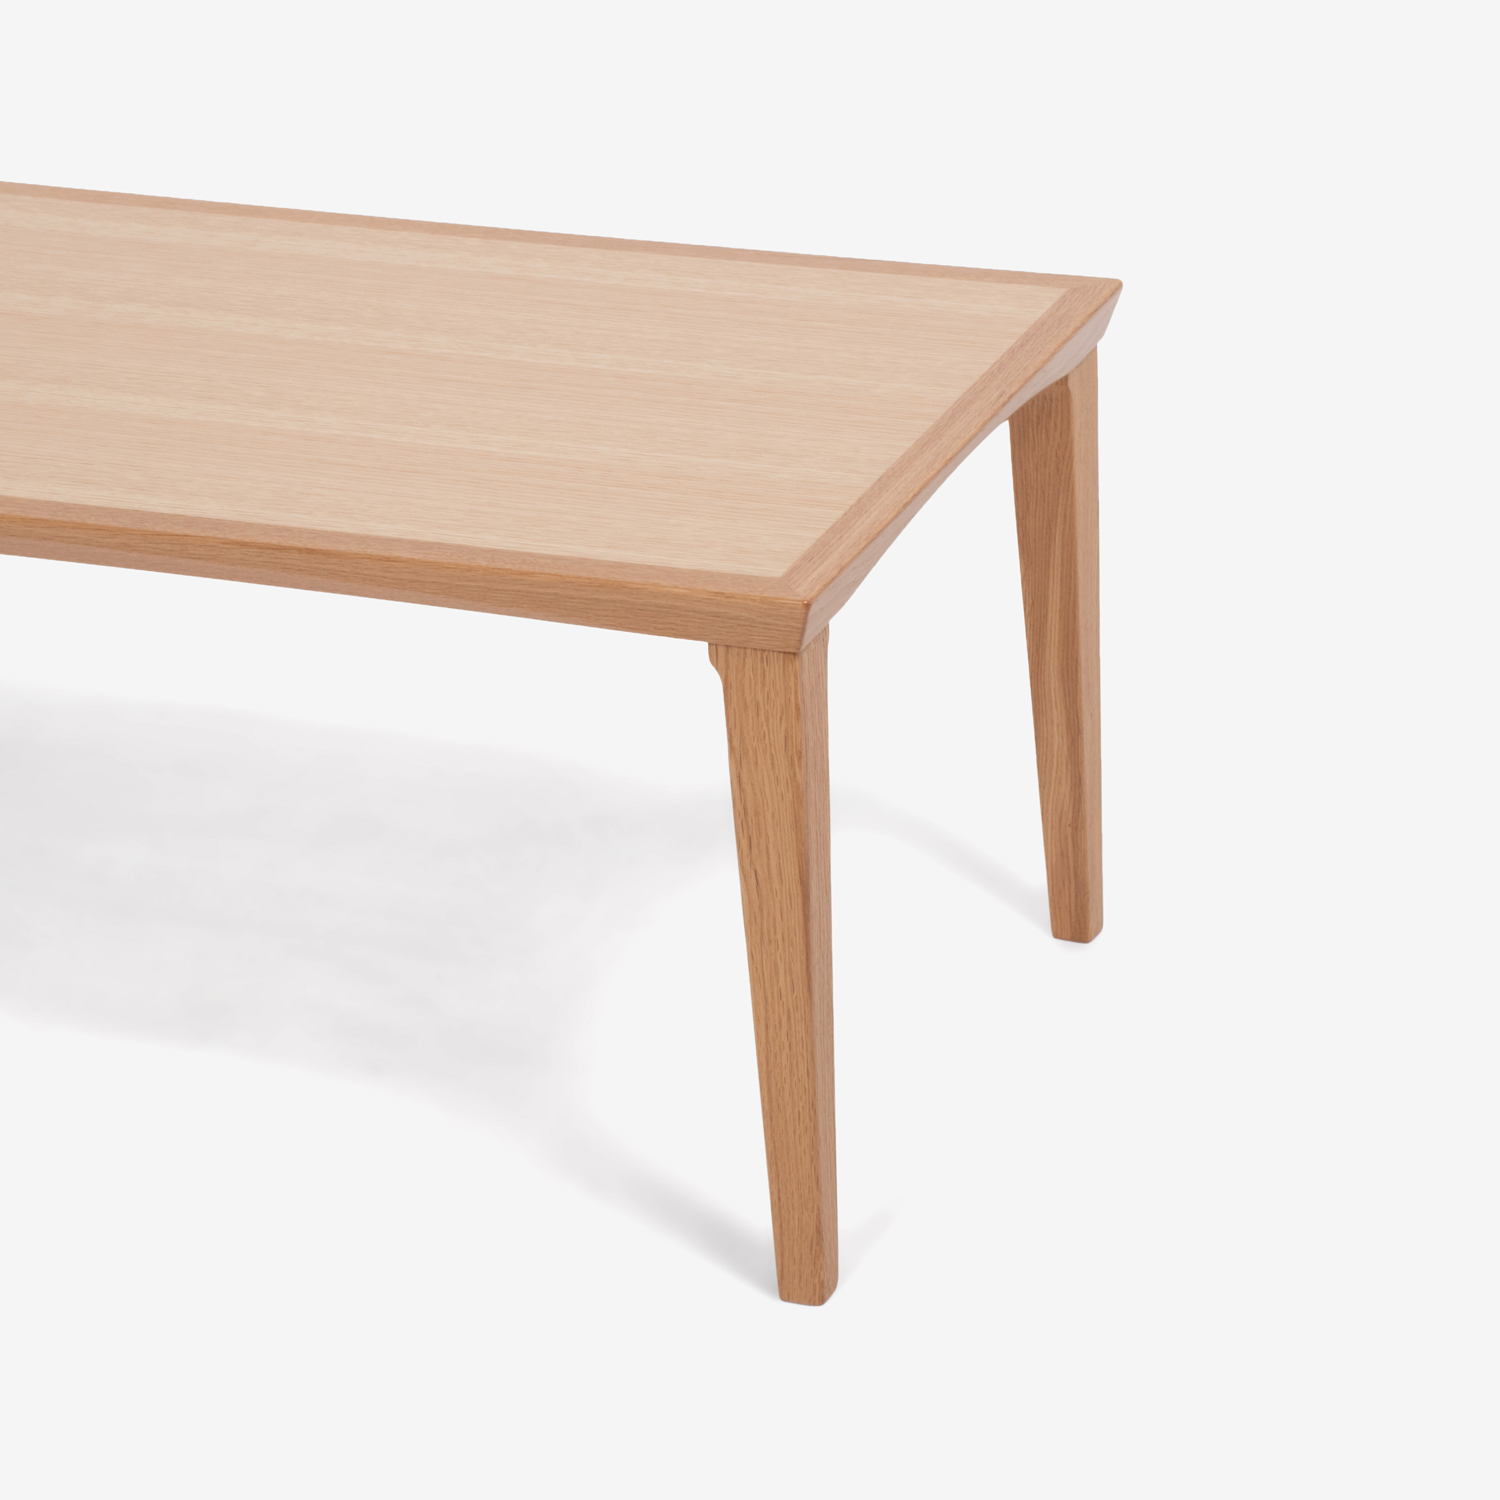 秋田木工 センターテーブル「N-LT005」ナラ材 ホワイトオーク色 全2サイズ【期間限定特別ご提供品のため20%OFF】